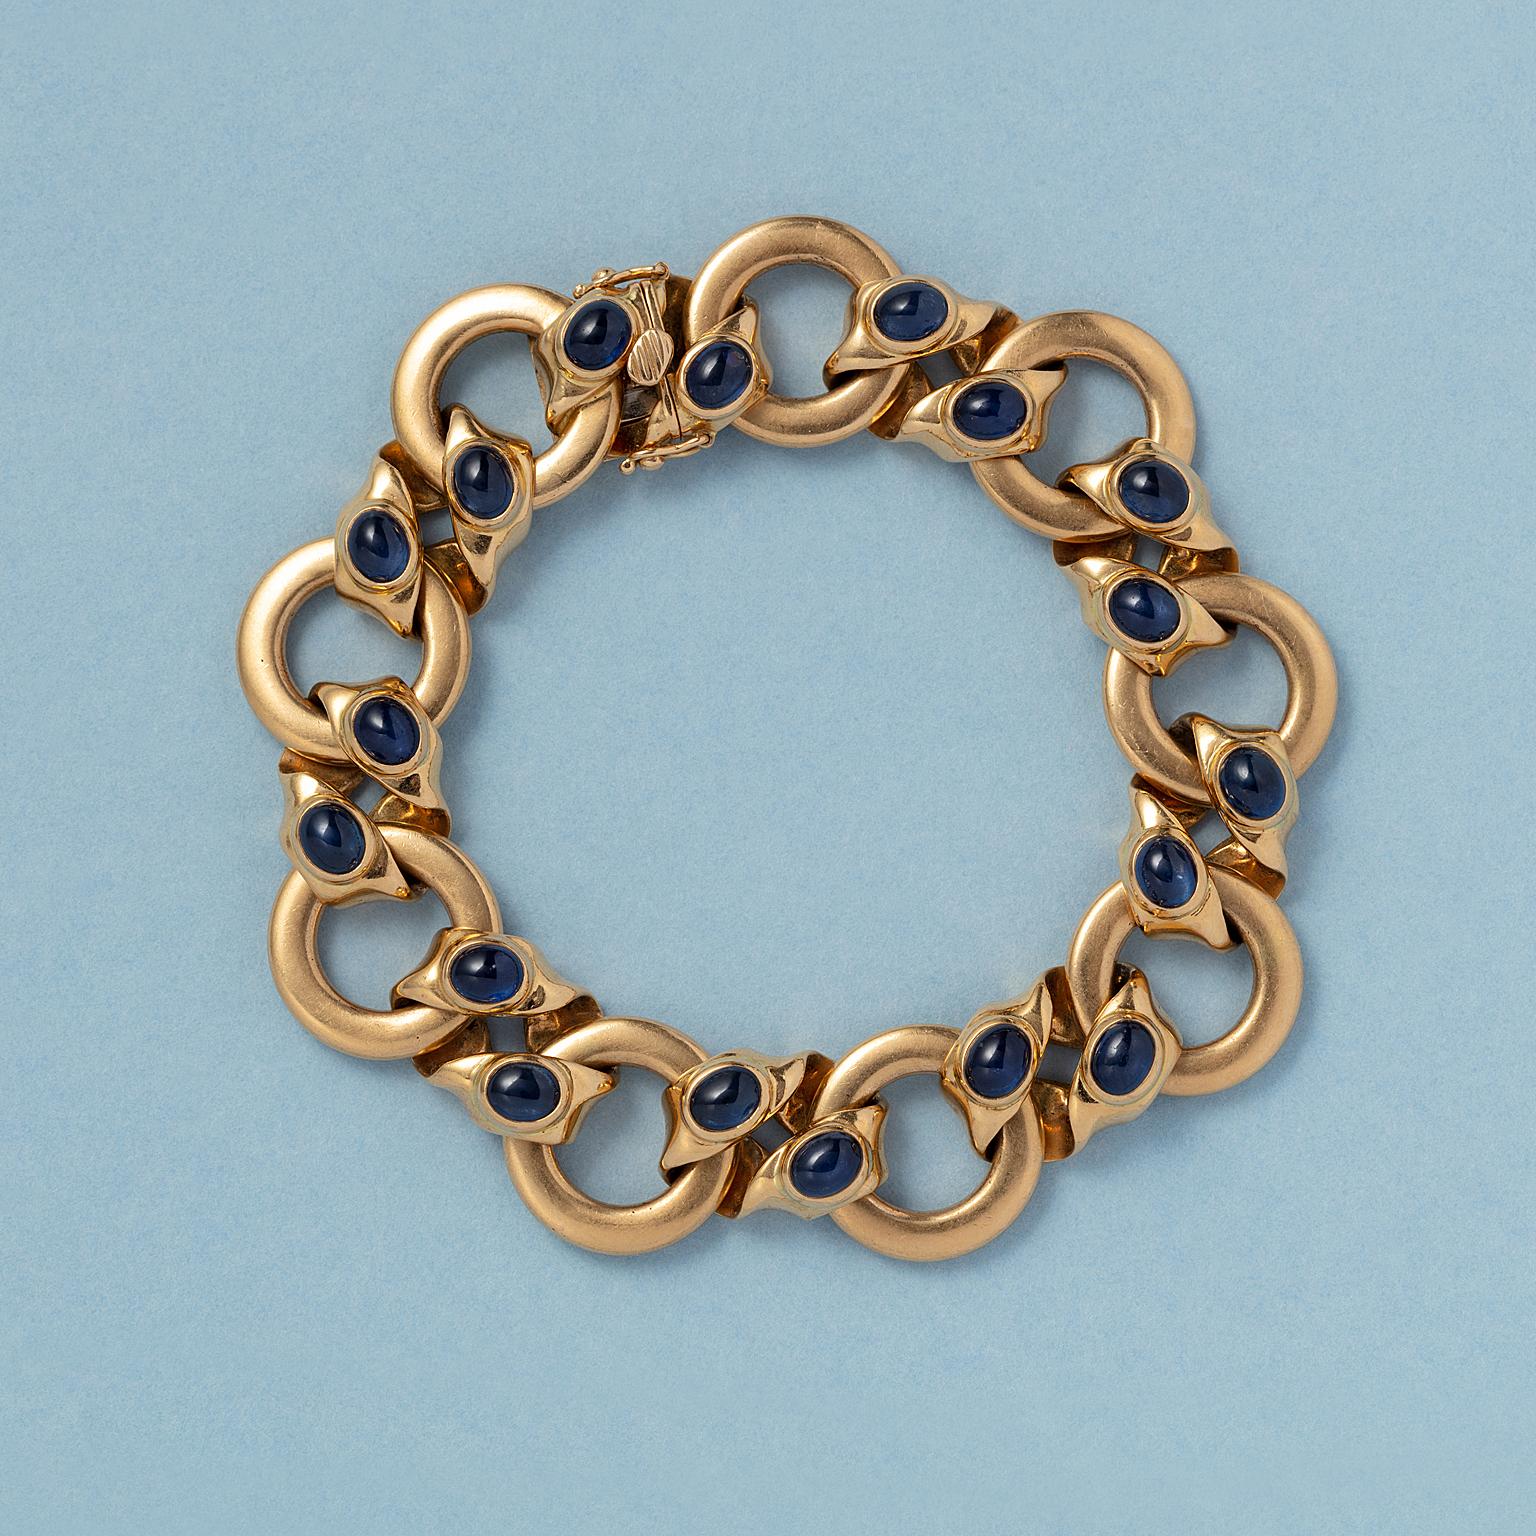 Ein handgefertigtes Armband aus 18 Karat Gold mit runden Gliedern und Verbindungsgliedern, die jeweils zwei ovale Saphire im Cabochon-Schliff (je ca. 0,6 Karat und ca. 5,4 Karat) tragen, mit einem versteckten Verschluss und einer deutschen